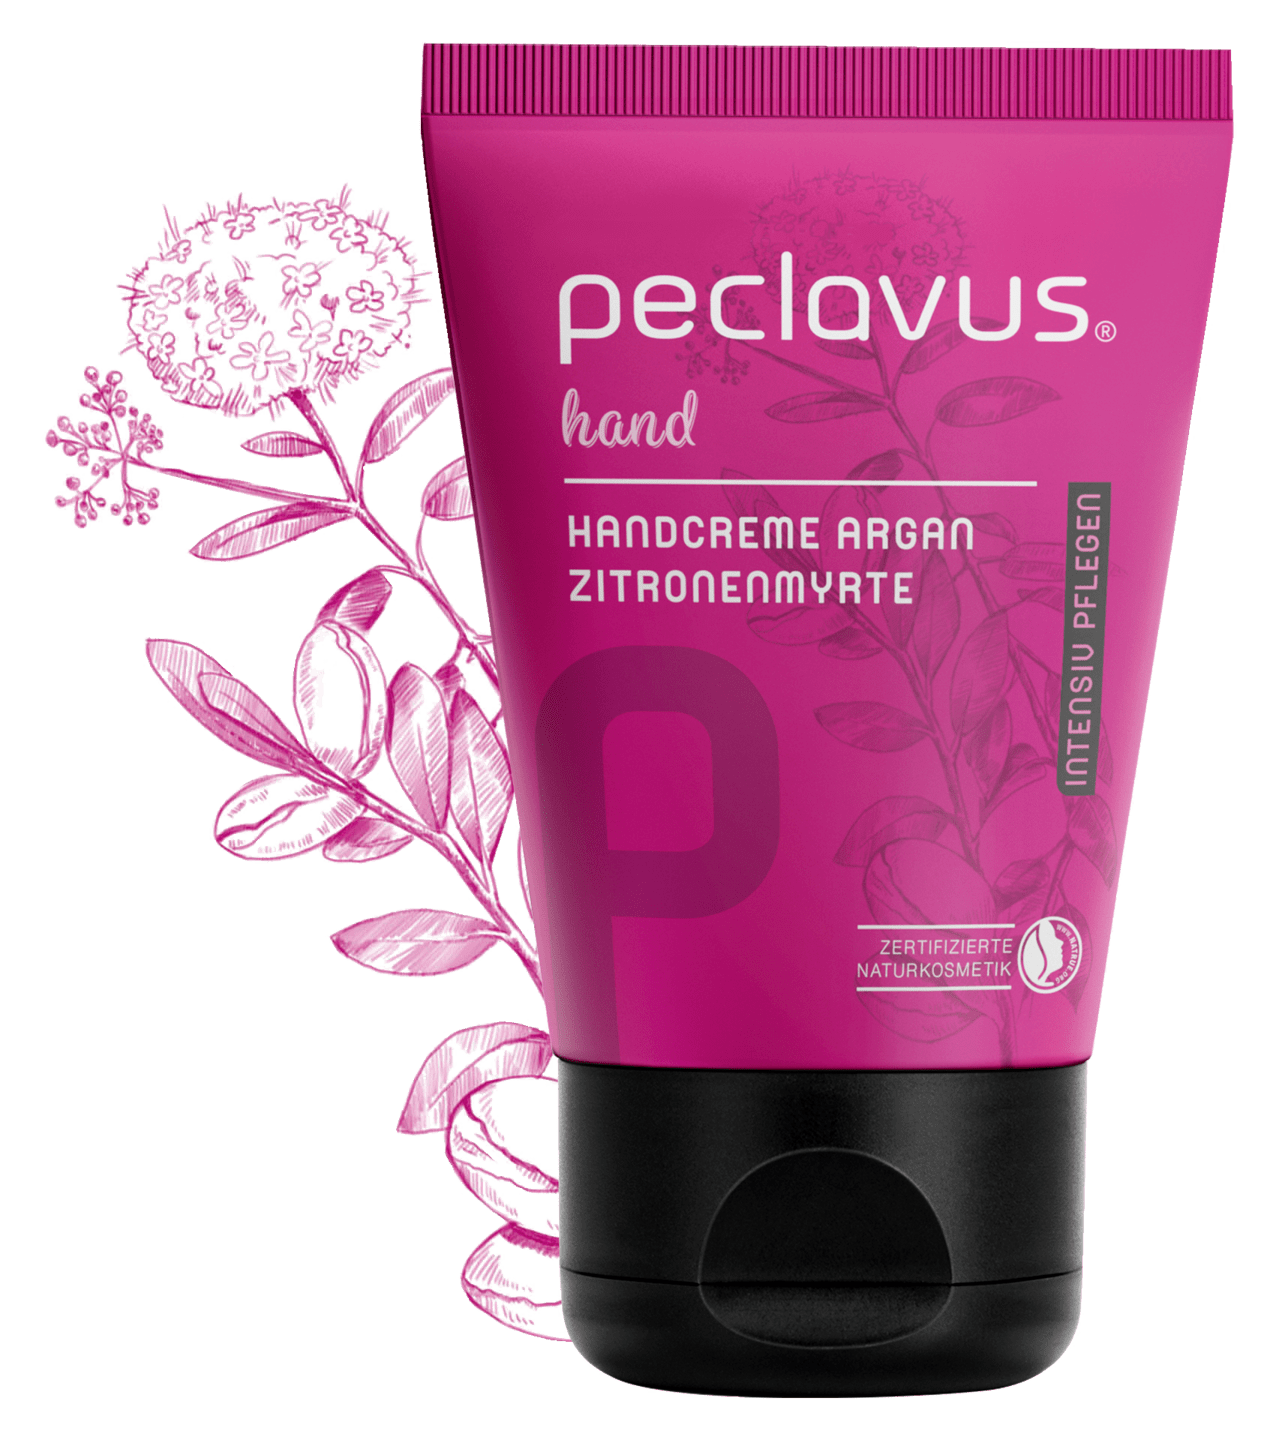 peclavus - Handcreme Argan Zitronenmyrte | Intensiv pflegen, 30 ml